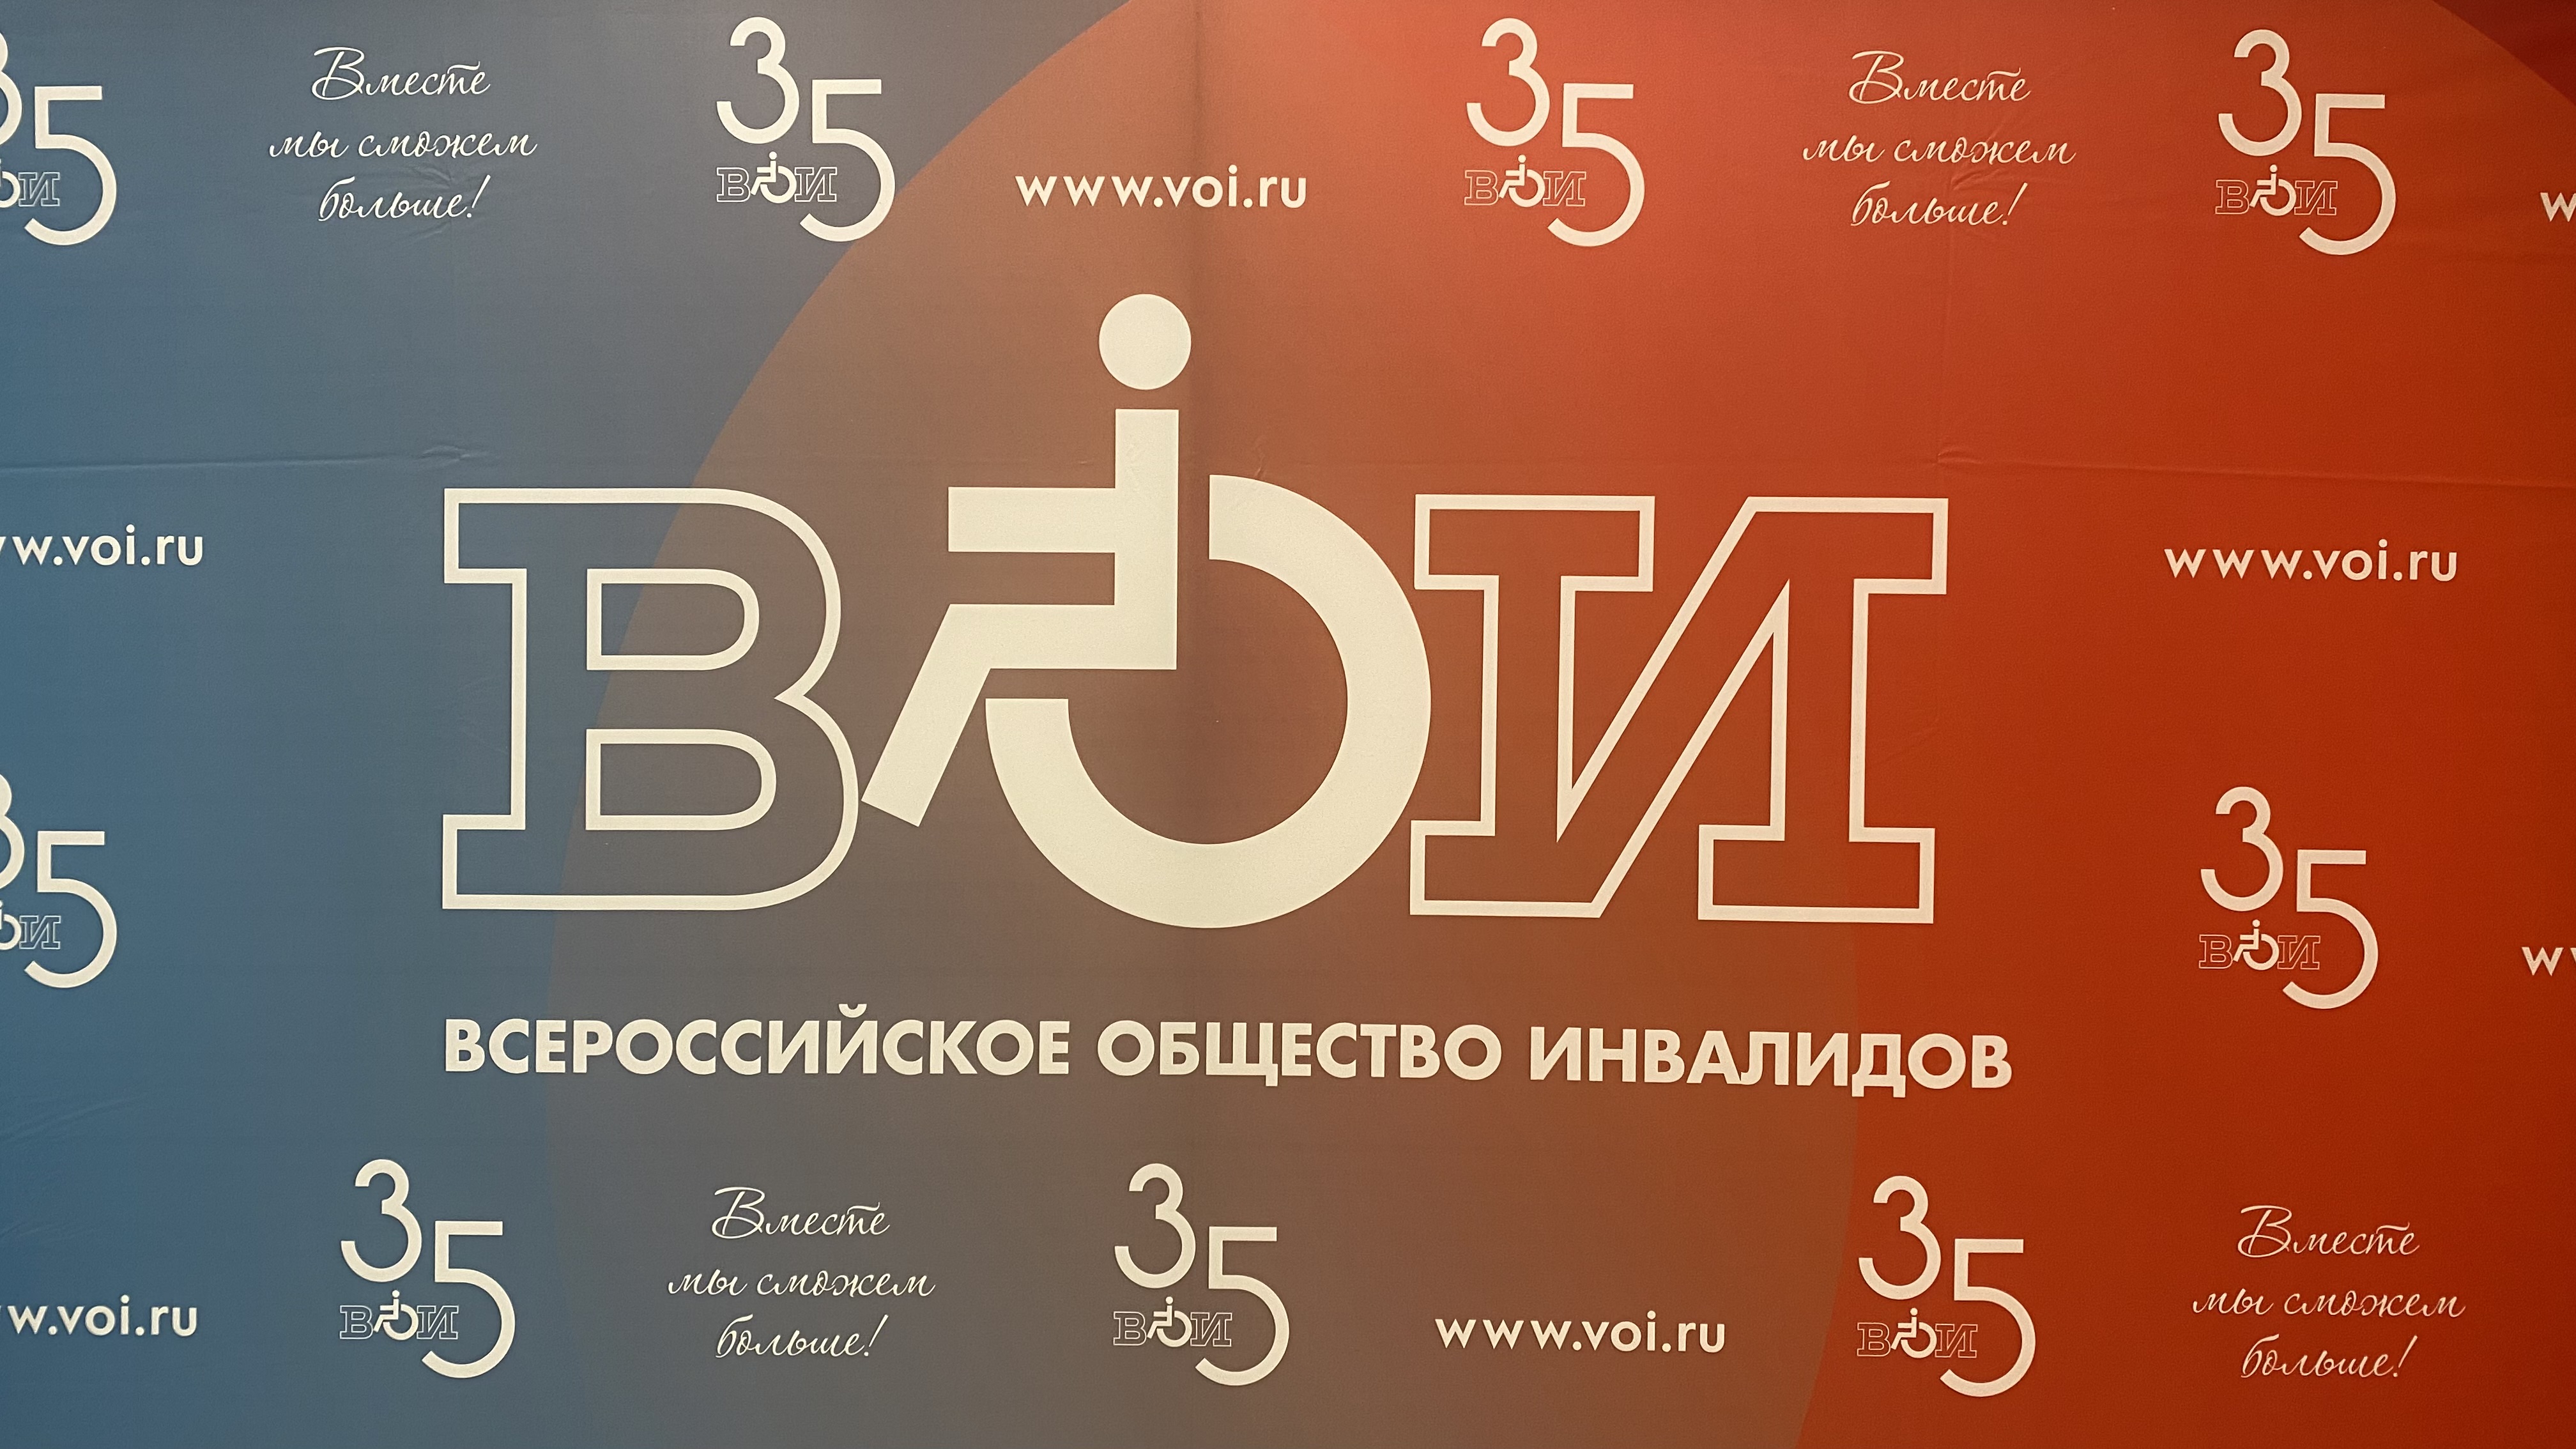 Всероссийскому Обществу Инвалидов исполнилось 35 лет! (видео)